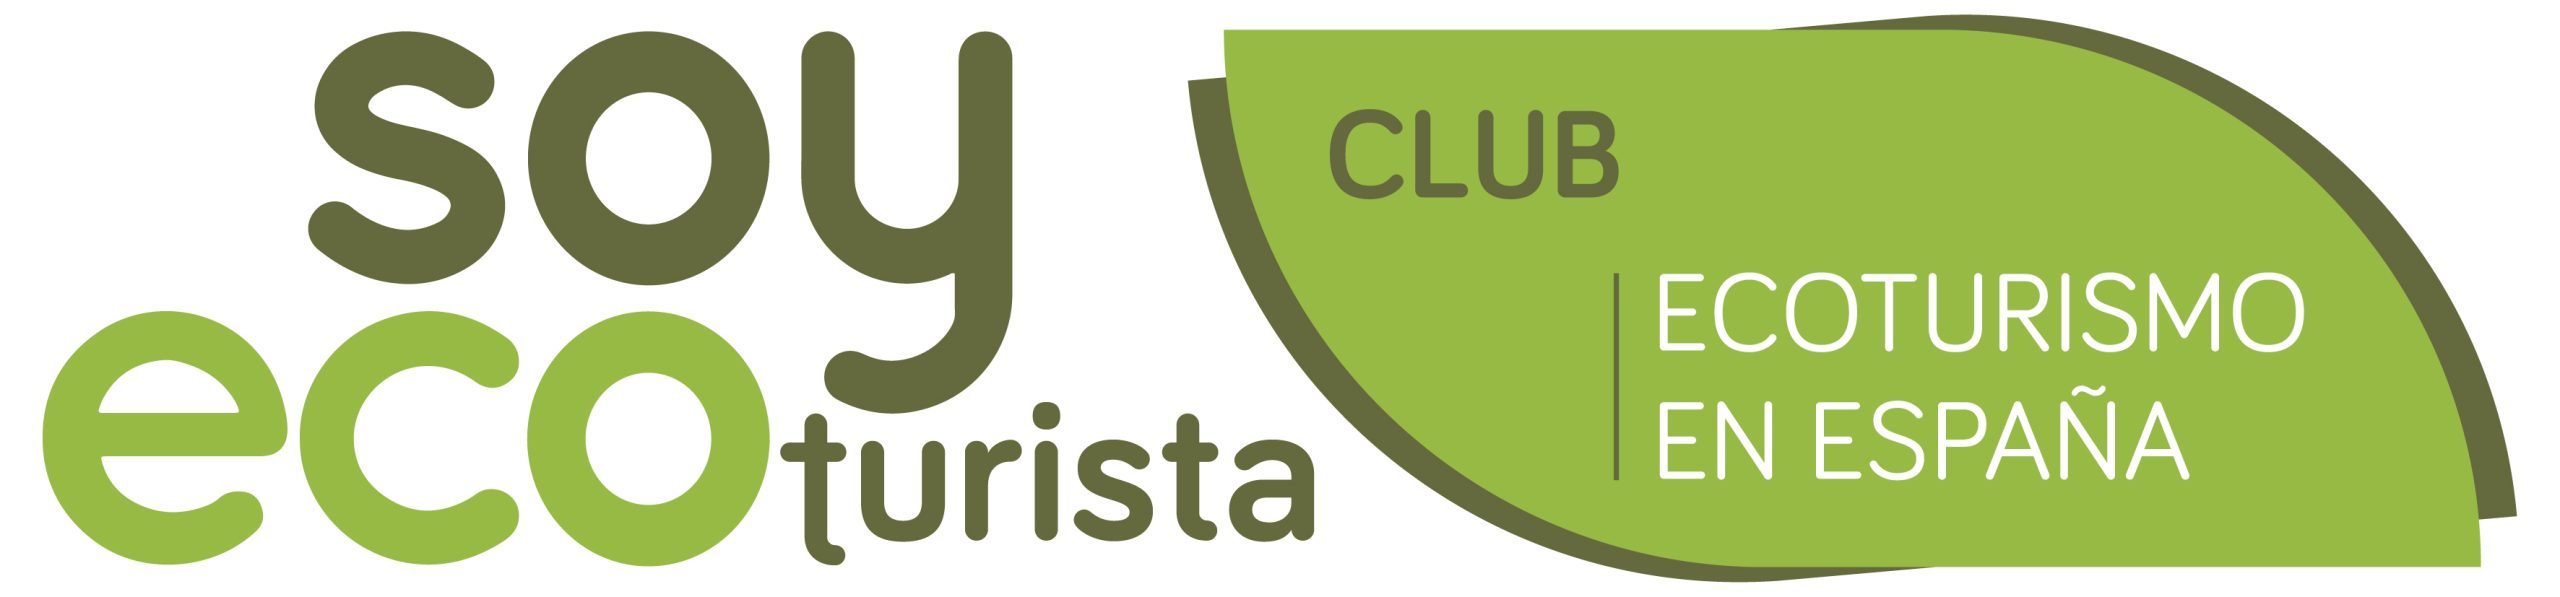 Club Ecoturismo en España